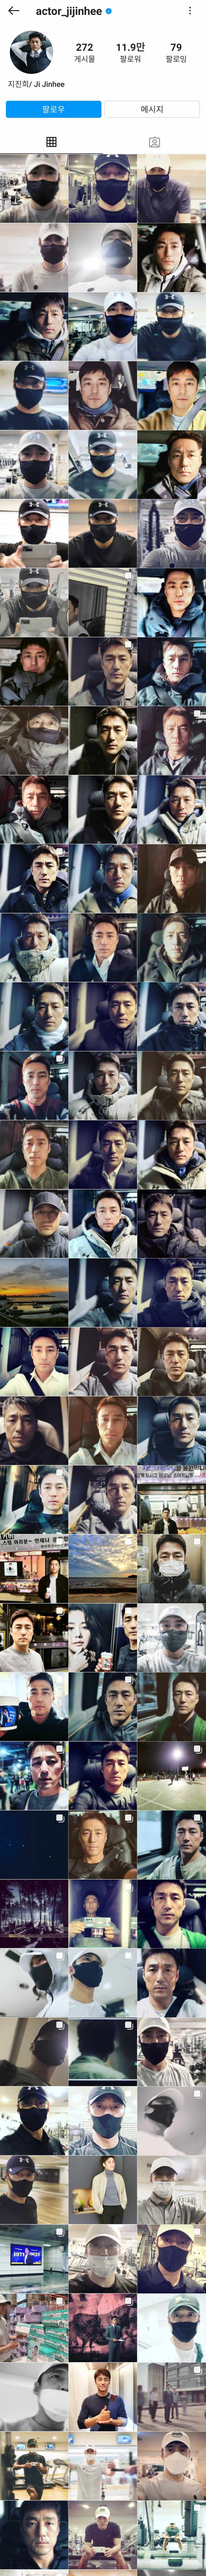 Ji Jin-hee's Instagram account selfie